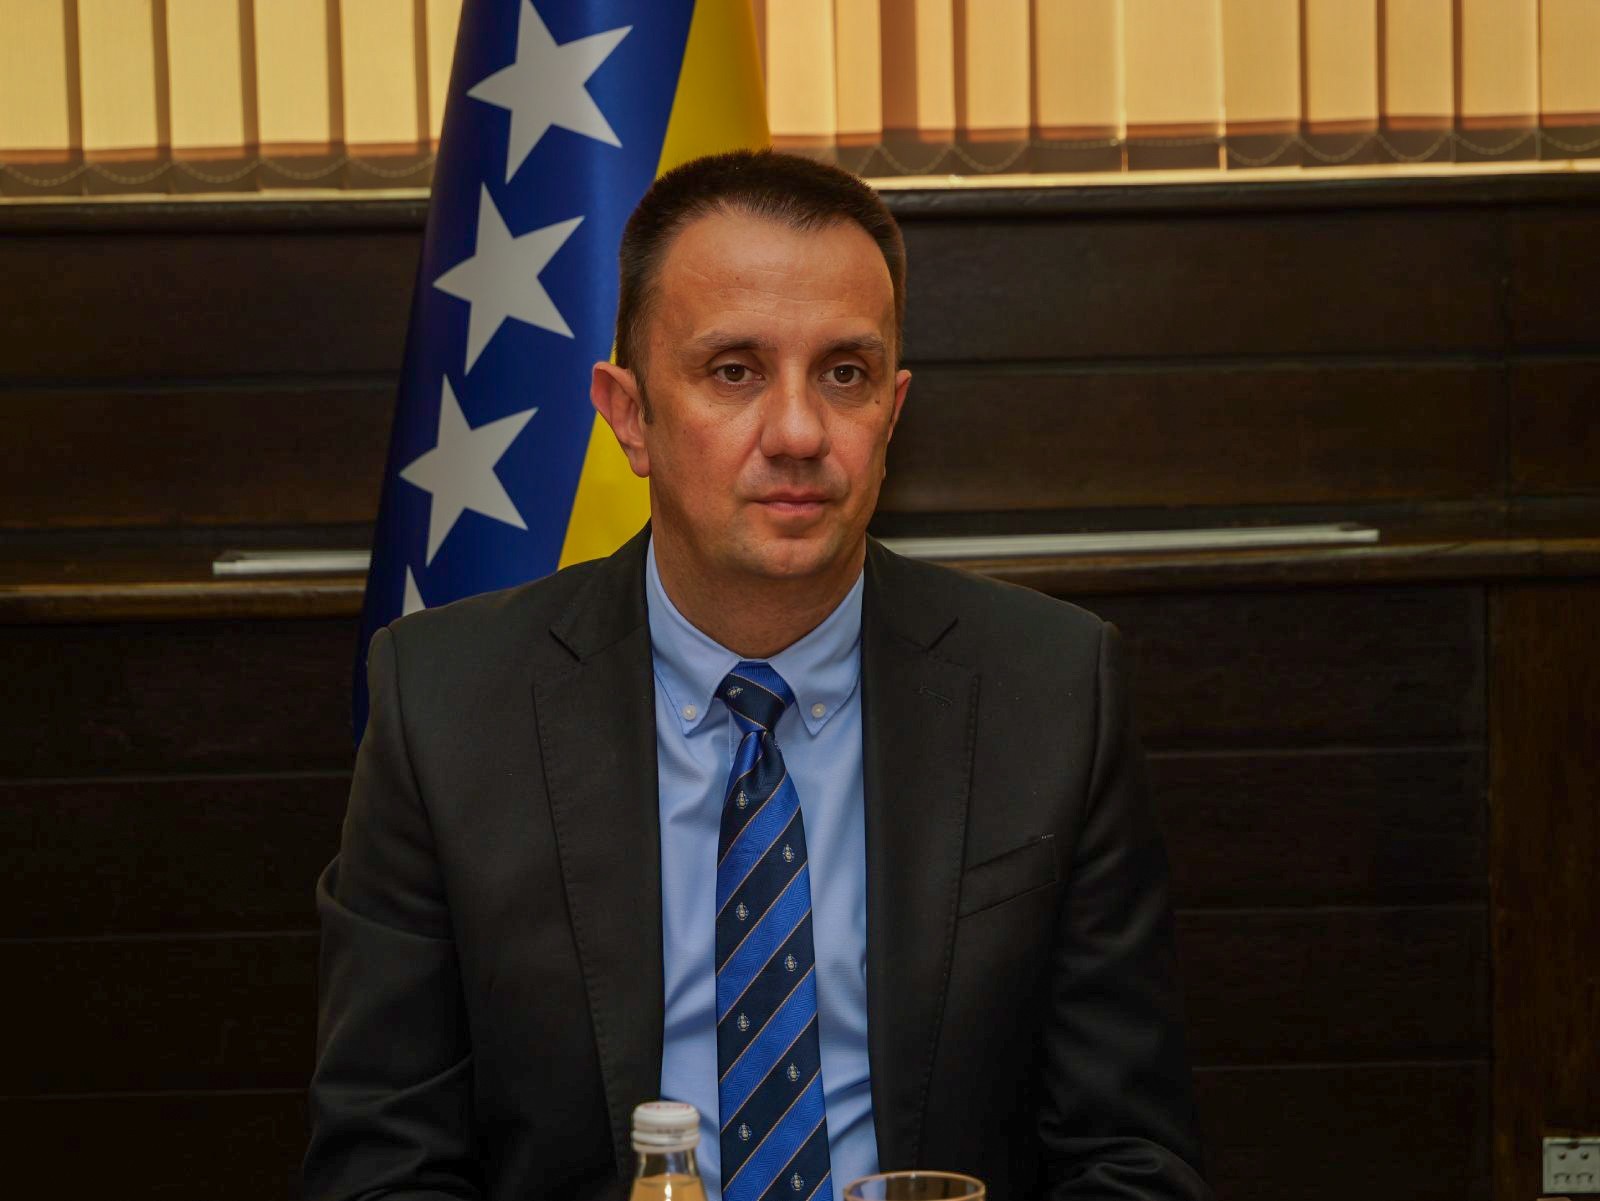 Ministar Lakić čestitao Dana rudara: Dužnost nam je da vam obezbijedimo sigurnost u radu, bolje uslove i primjerenu nagradu